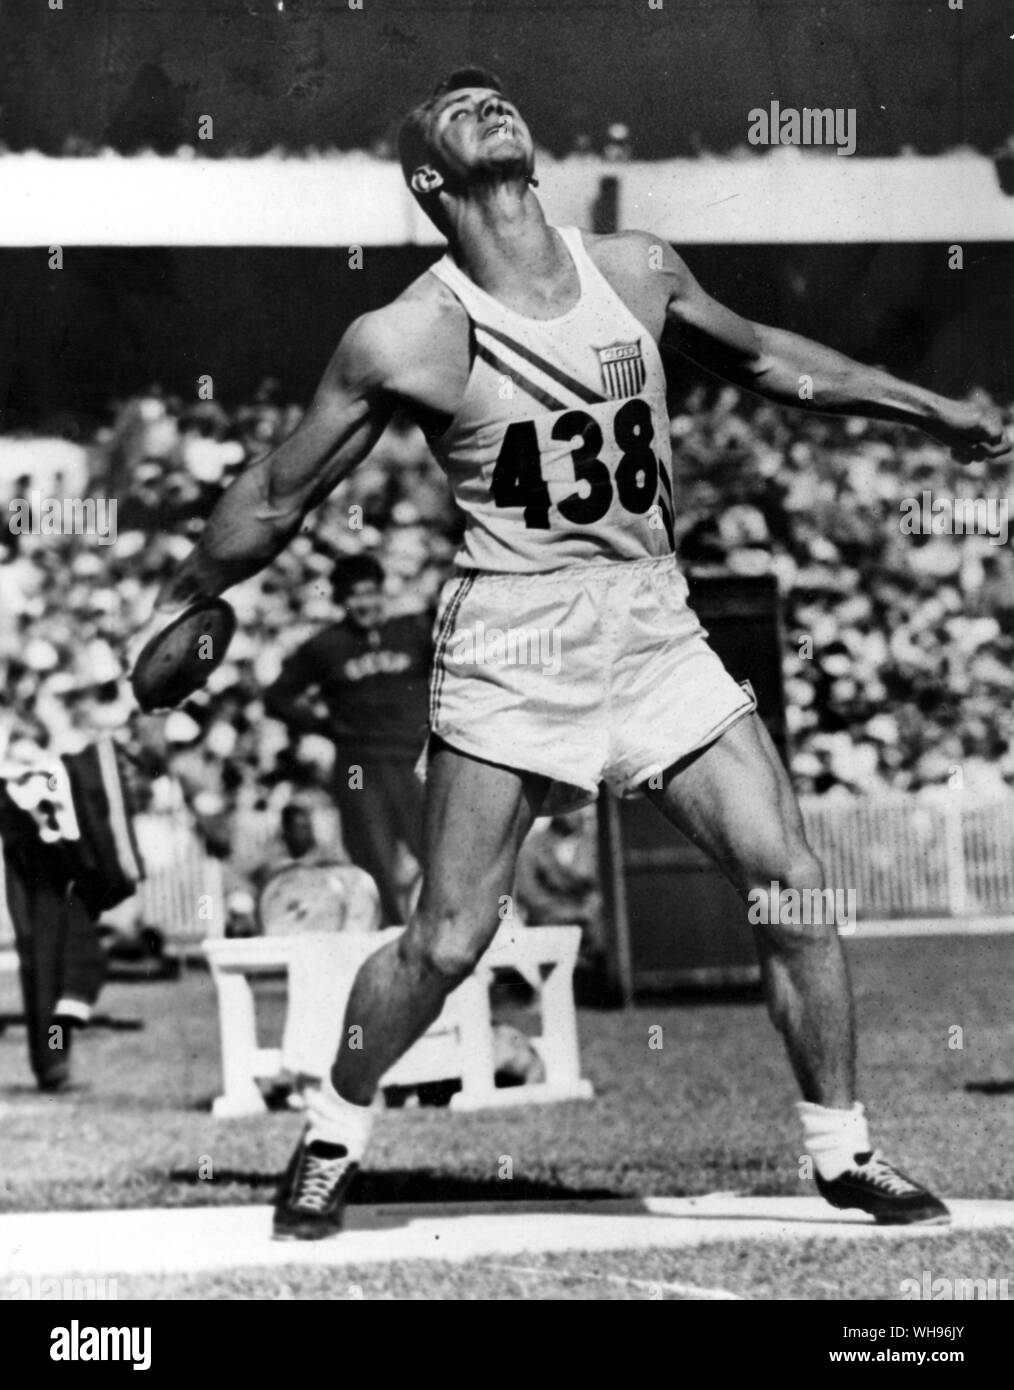 Aus., Melbourne, Olympics, 1956: Al Oerter im Diskuswerfen. Er gewann schließlich die Goldmedaille mit einem anderen werfen.. . Stockfoto